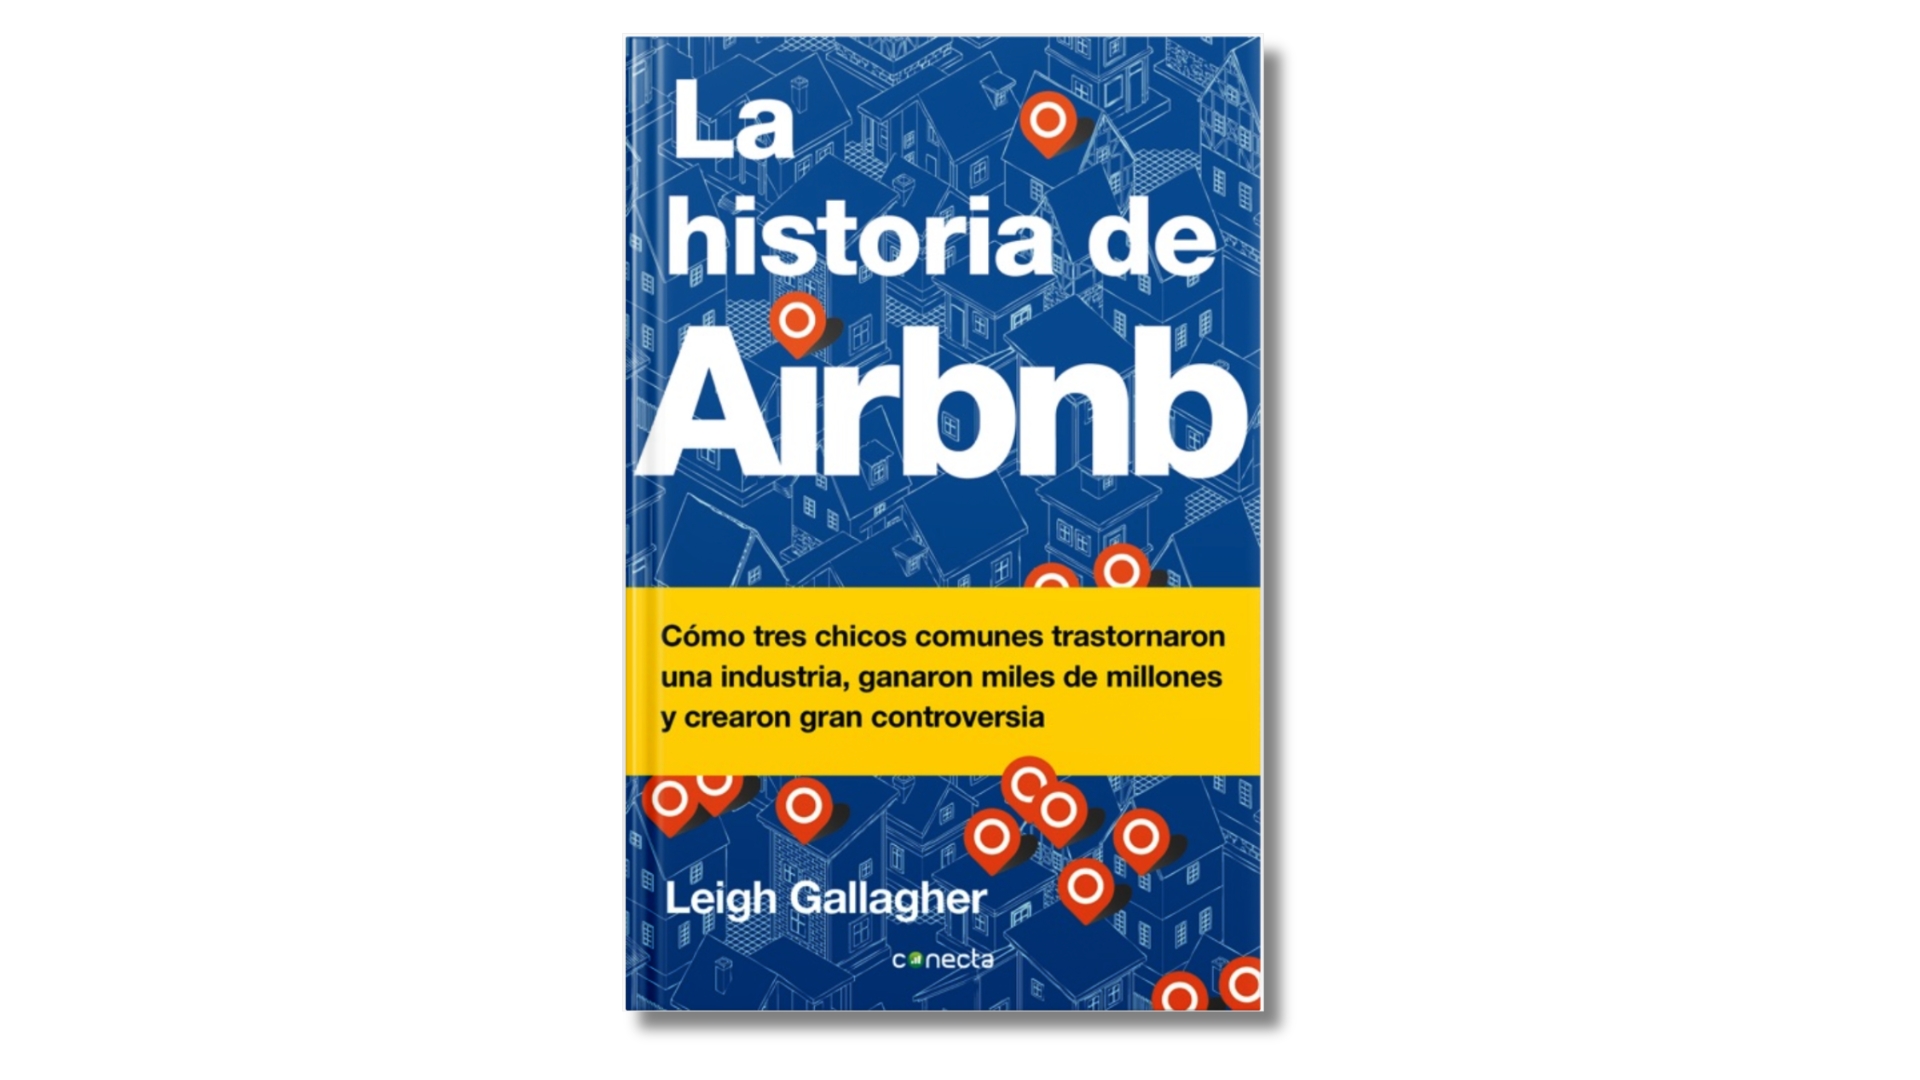 La historia de Airbnb, (editorial conecta, 2018)